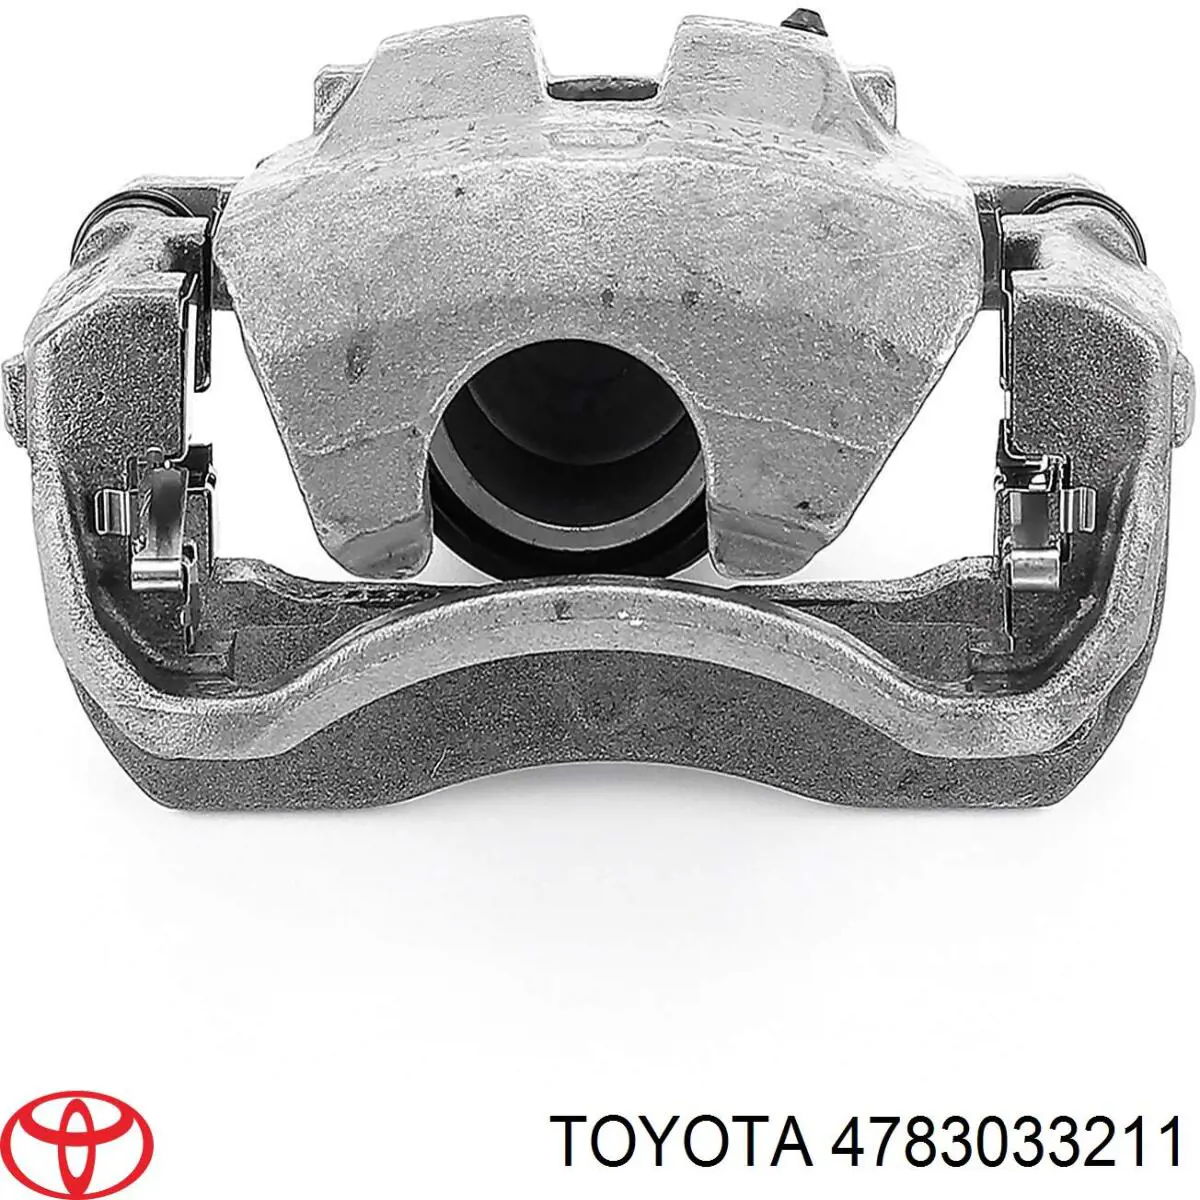 4783033211 Toyota суппорт тормозной задний правый